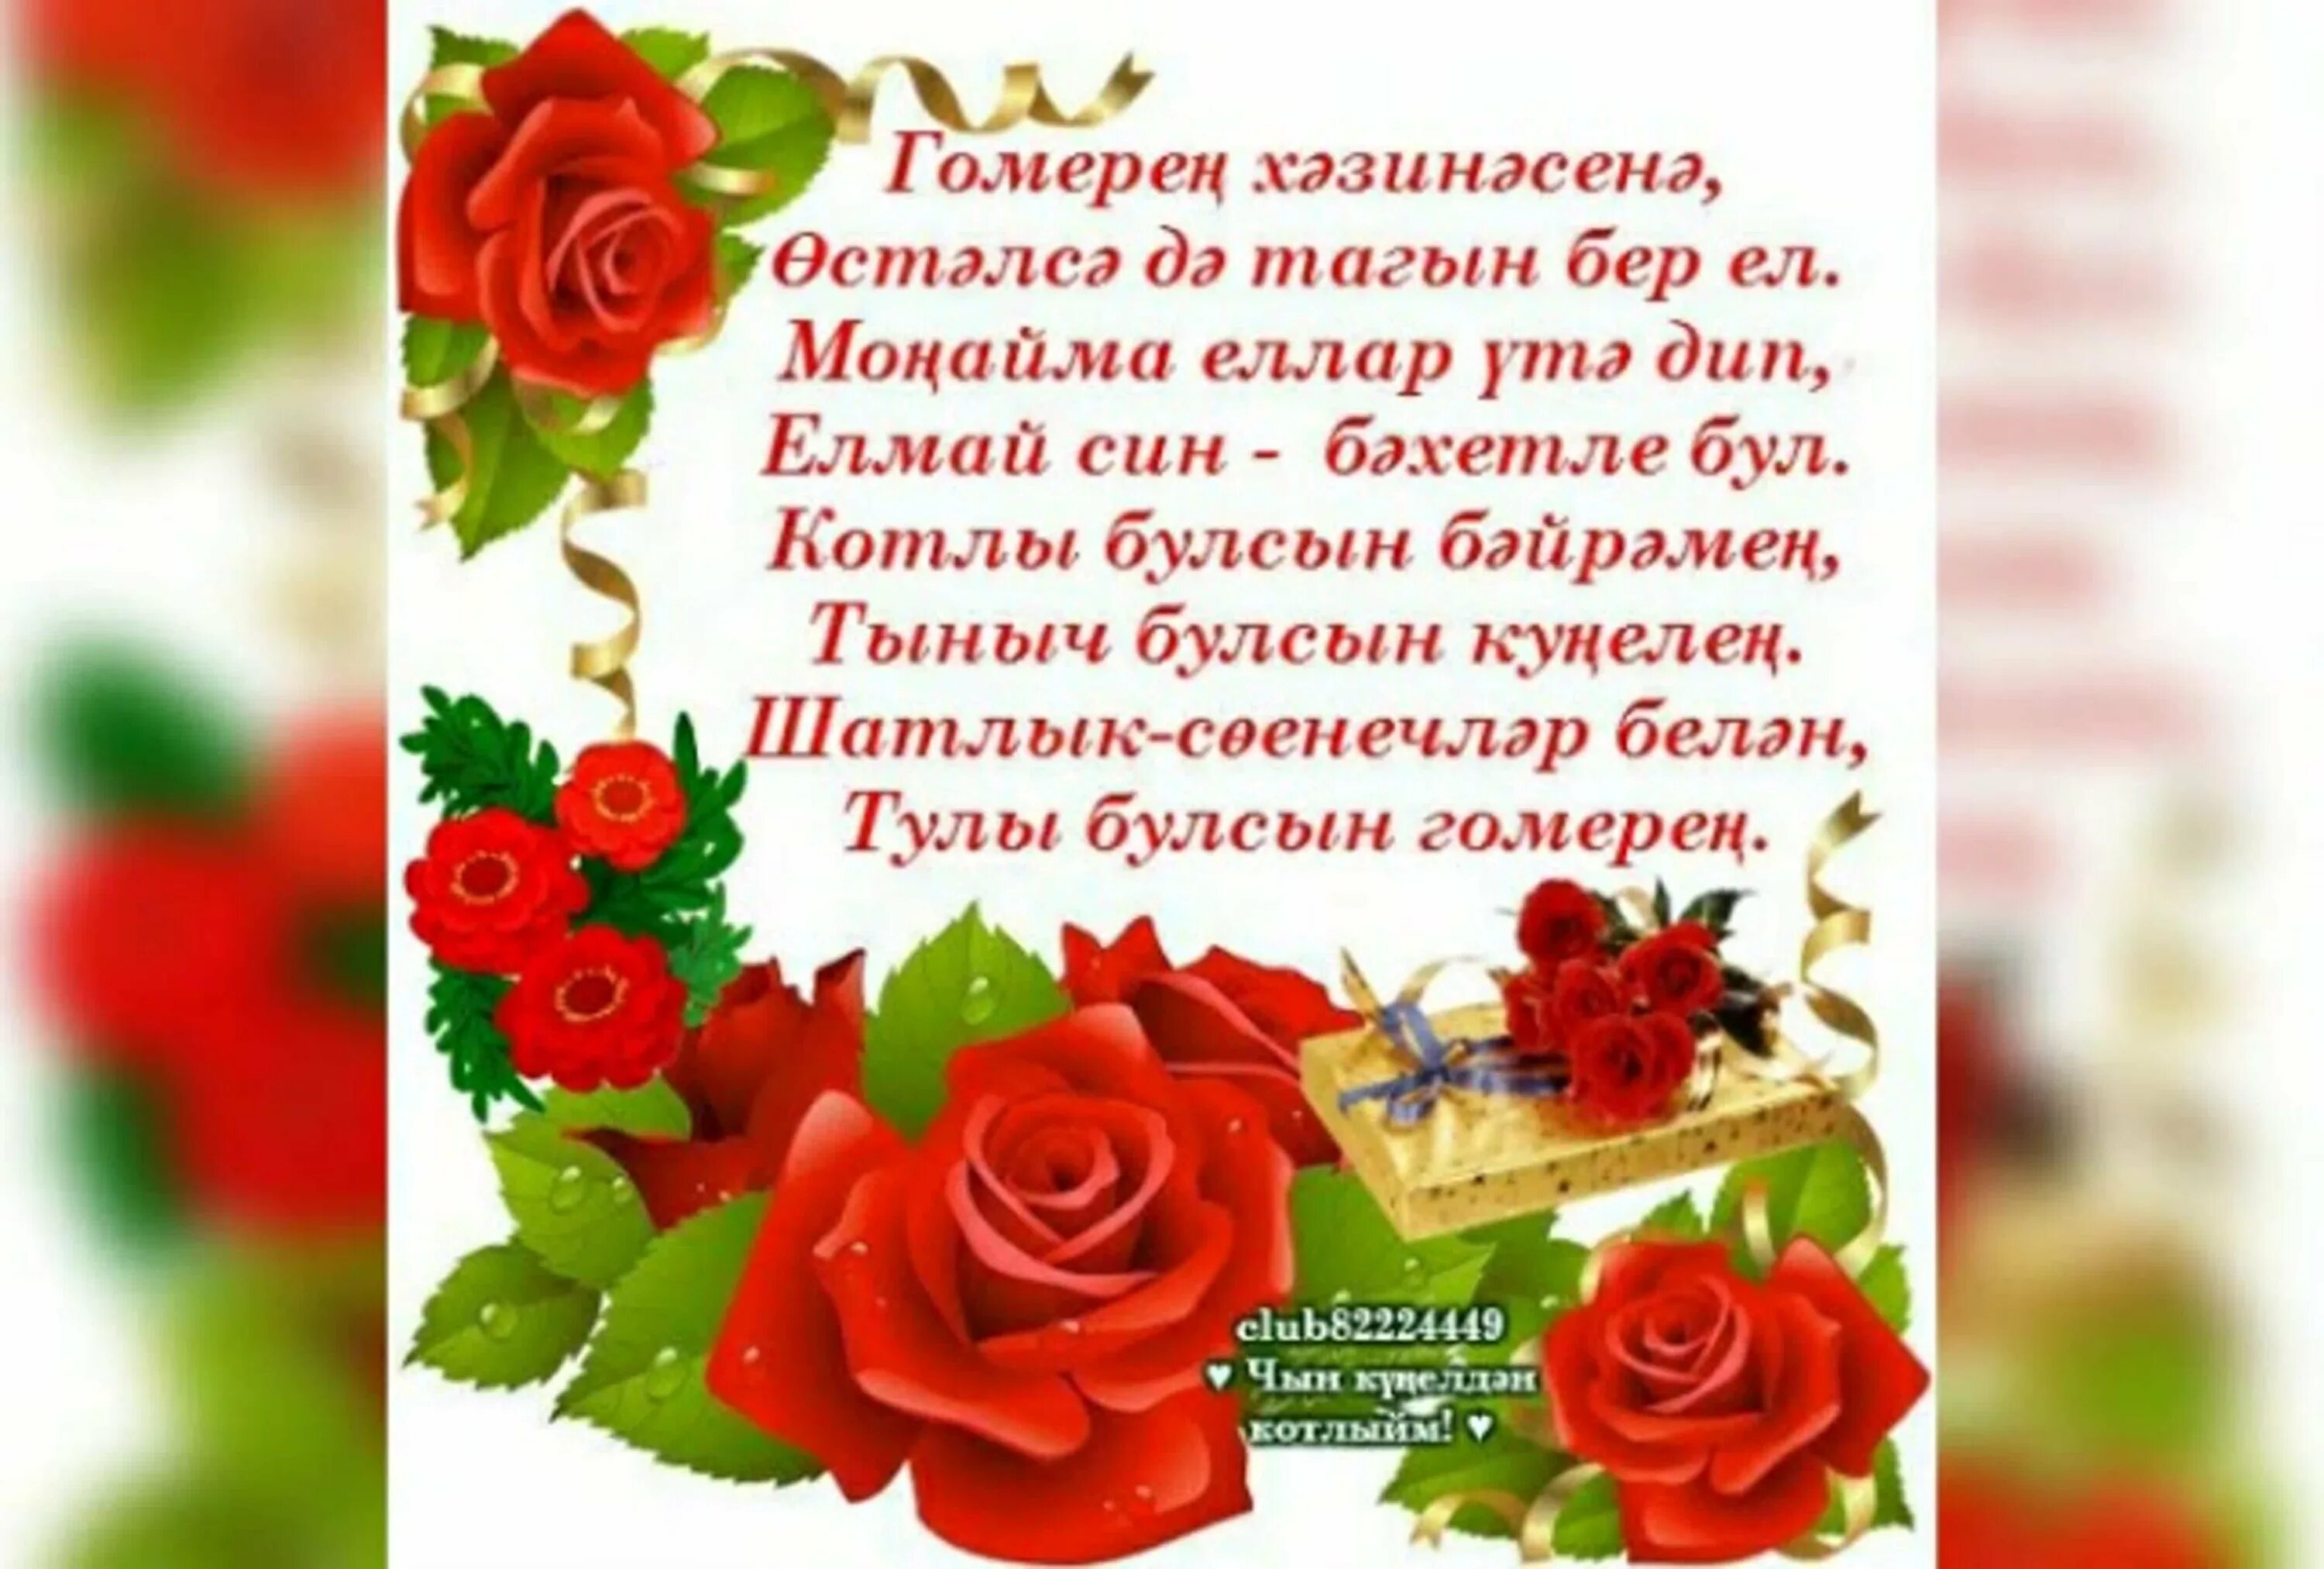 Кодагый туган конен. Поздравления с днём рождения на татарском языке. Поздравление на татарском языке. Татарские поздравления с днем рождения. Поздравления с днём рождения женщине на татарском языке.